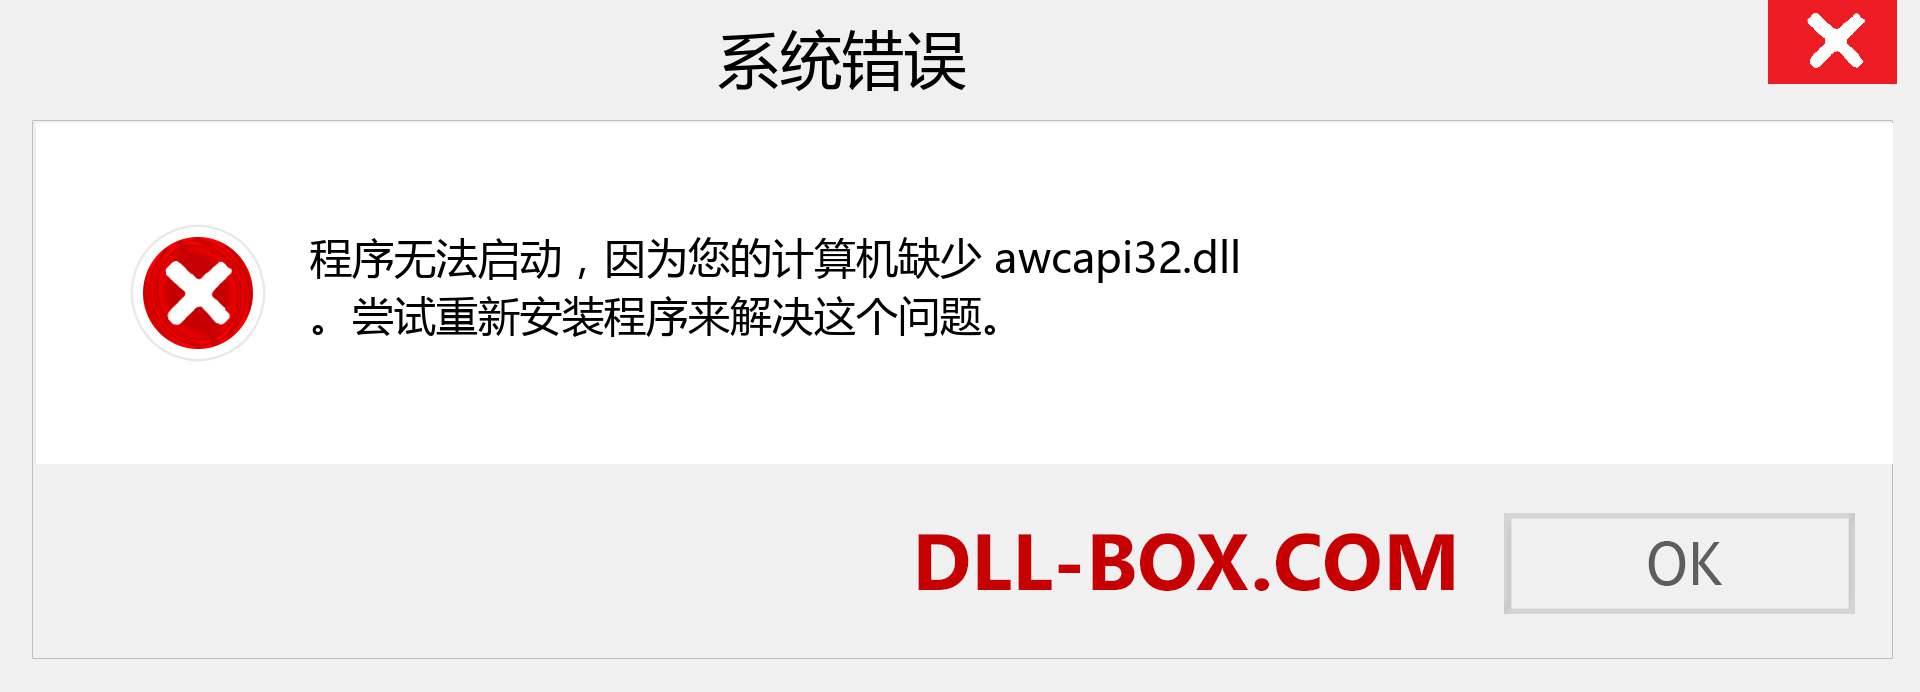 awcapi32.dll 文件丢失？。 适用于 Windows 7、8、10 的下载 - 修复 Windows、照片、图像上的 awcapi32 dll 丢失错误